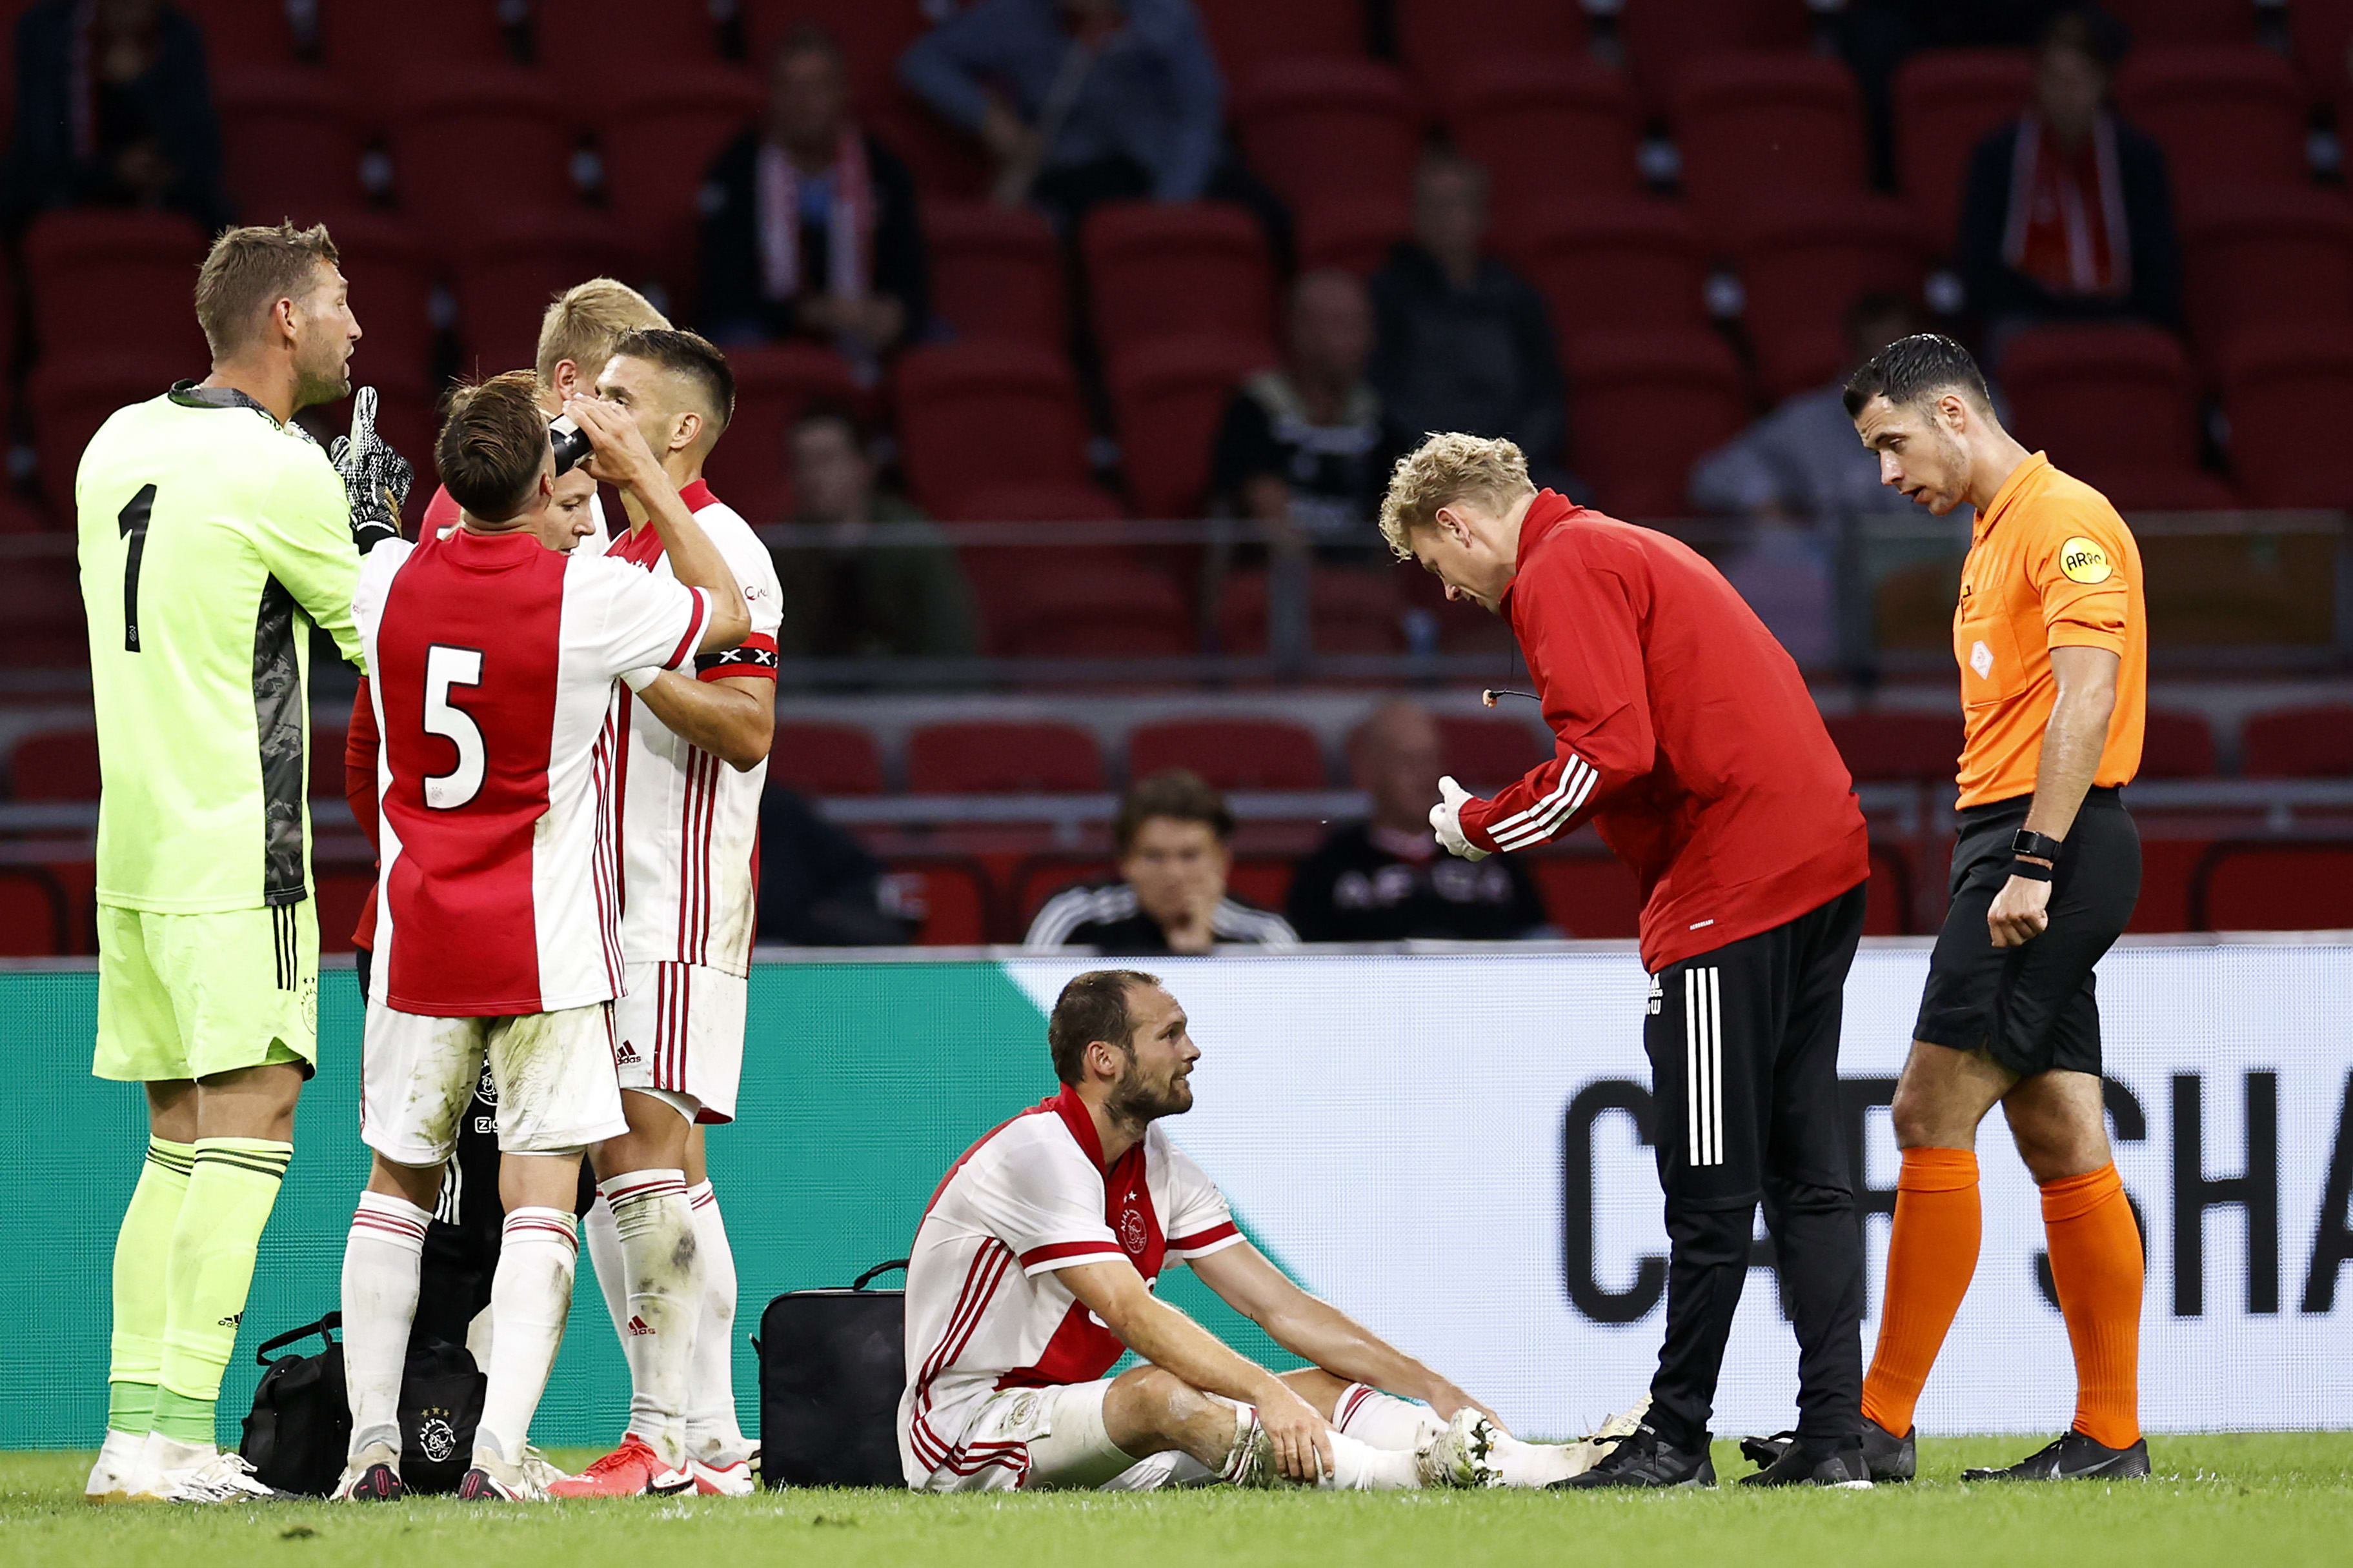 Daley Blind zakt in elkaar tijdens oefenwedstrijd tegen Hertha BSC